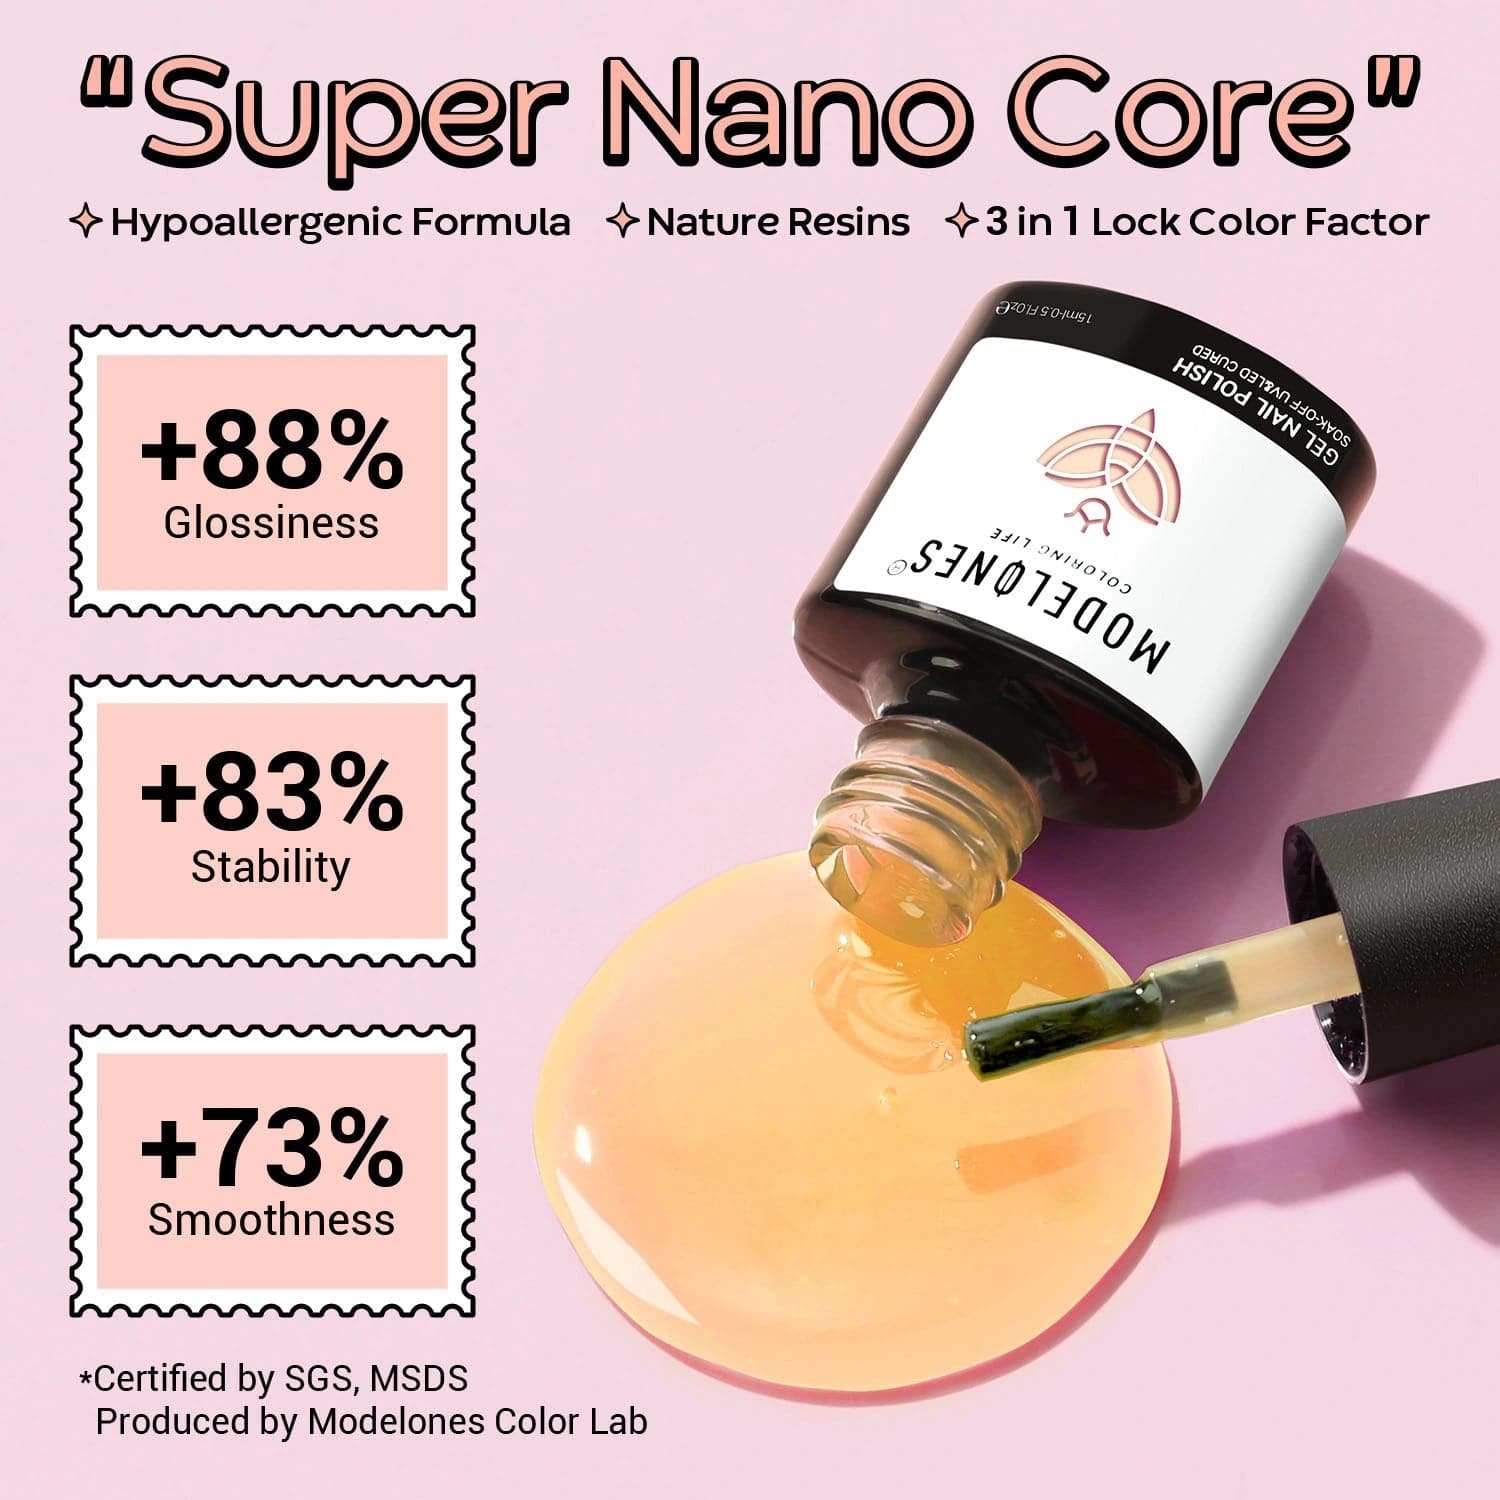 Super-Nano Resin Polish